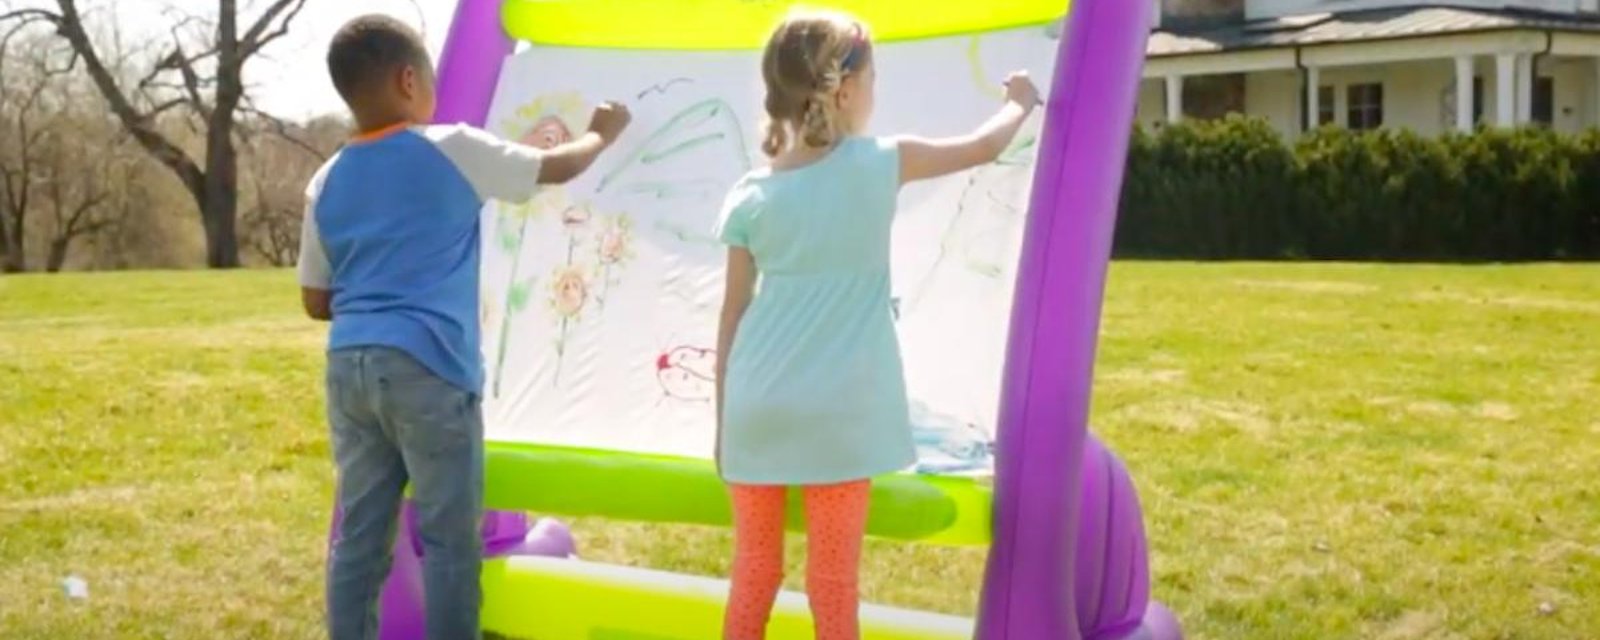 Un beau cadeau à faire aux enfants cet été: un chevalet gonflable!